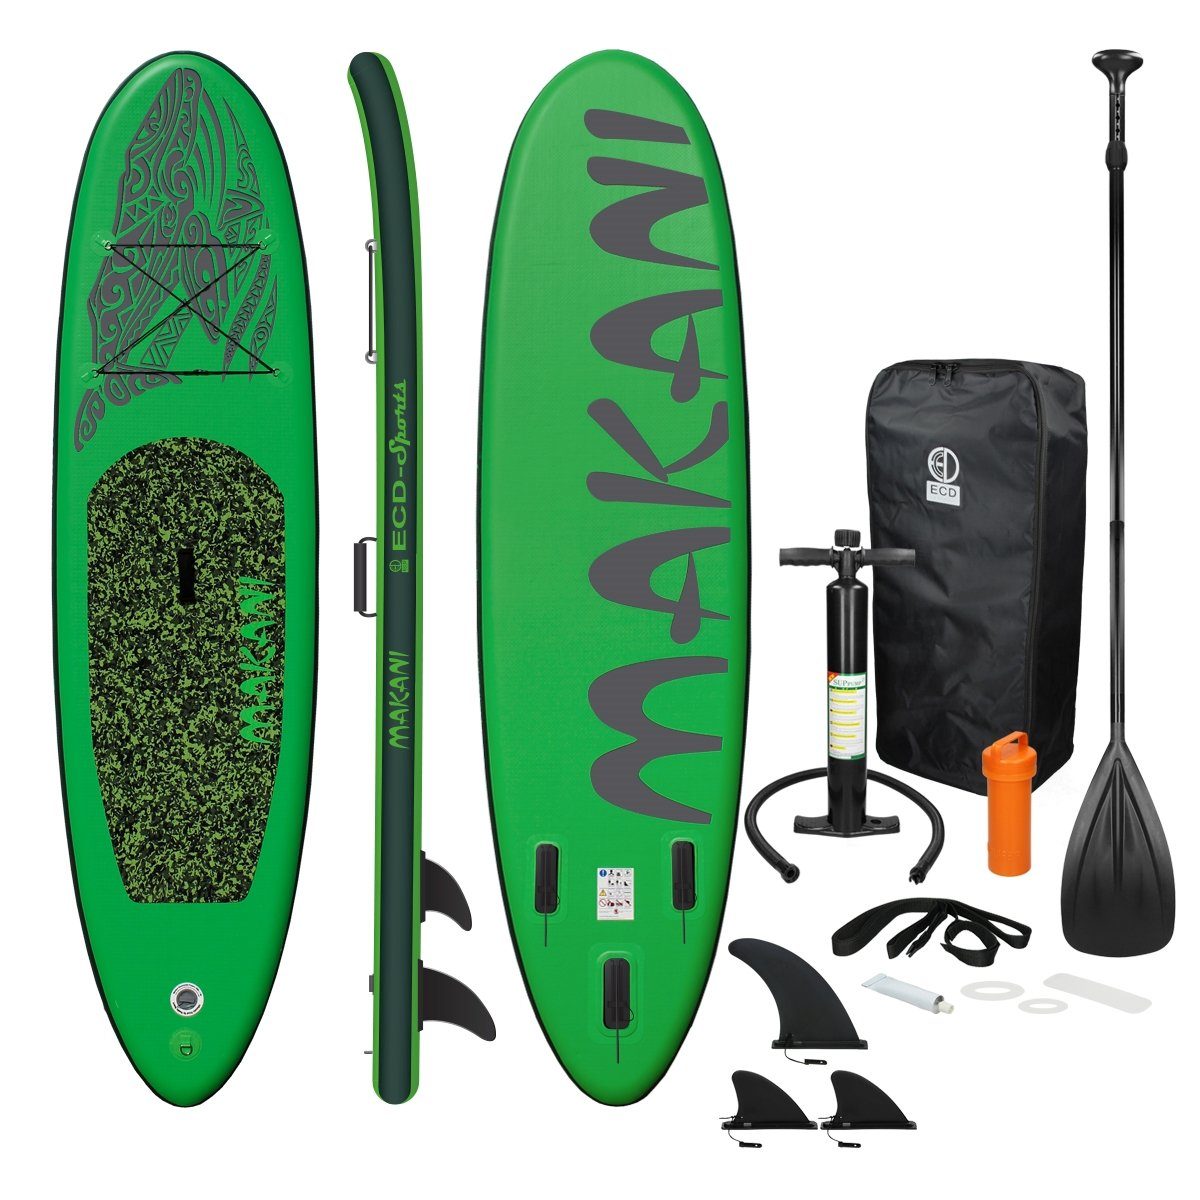 Zubehör ECD bis Surfboard, Stand Board 150kg Makani Paddle Aufblasbares PVC SUP-Board Grün 320x82x15cm Pumpe Up Tragetasche Germany